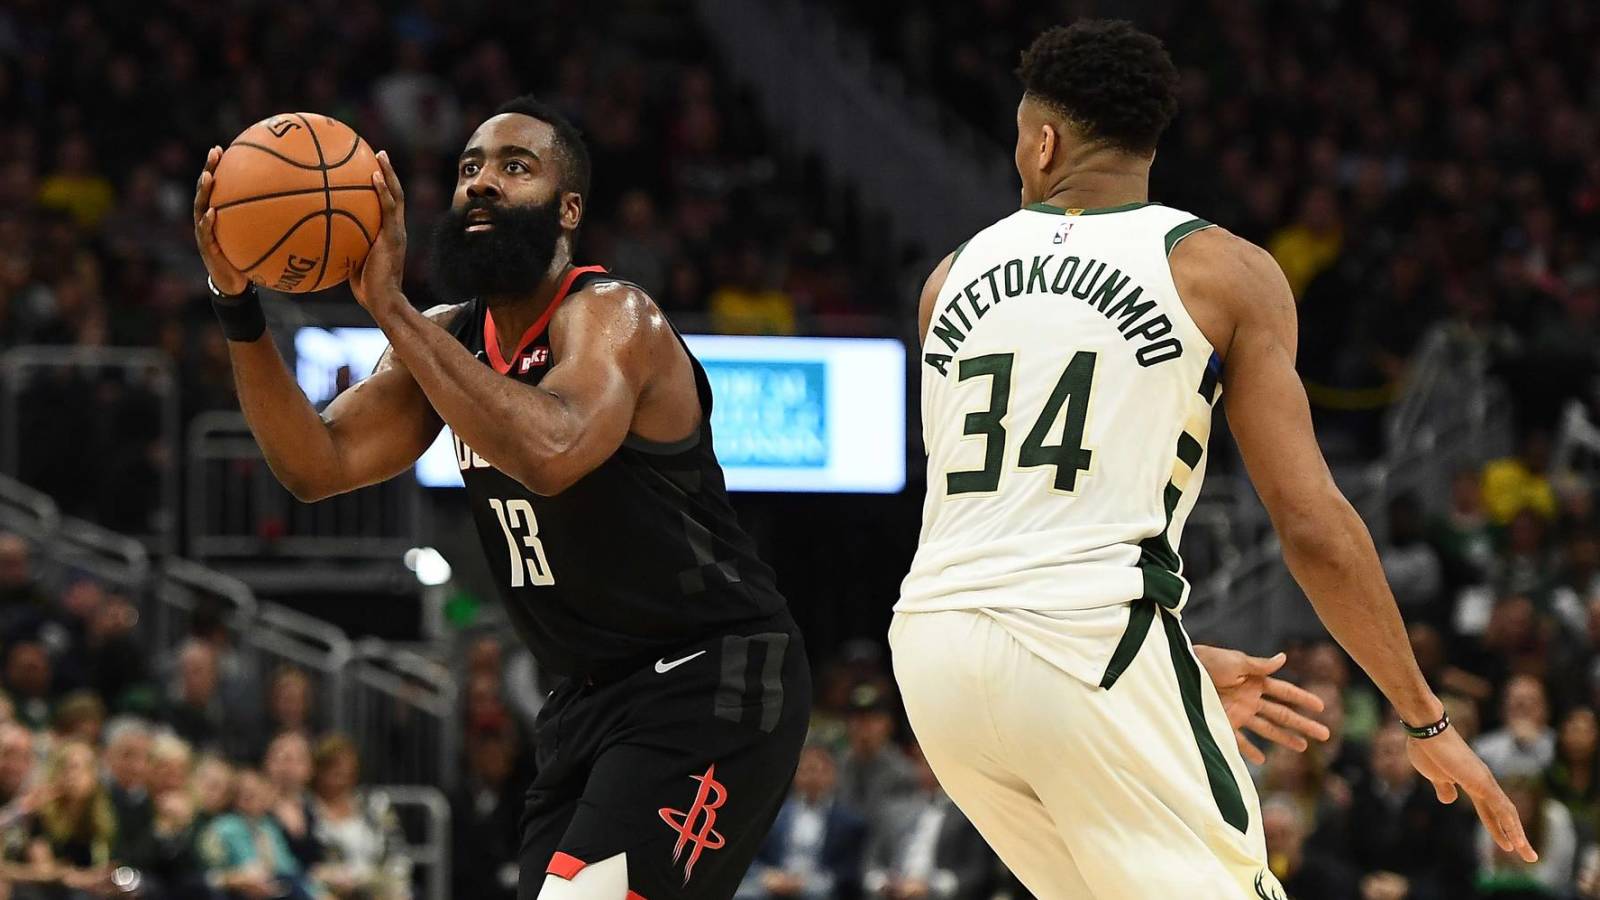 Điểm mặt 10 cầu thủ làm tốn giấy mực nhất NBA Playoffs 2019 (Kỳ cuối)